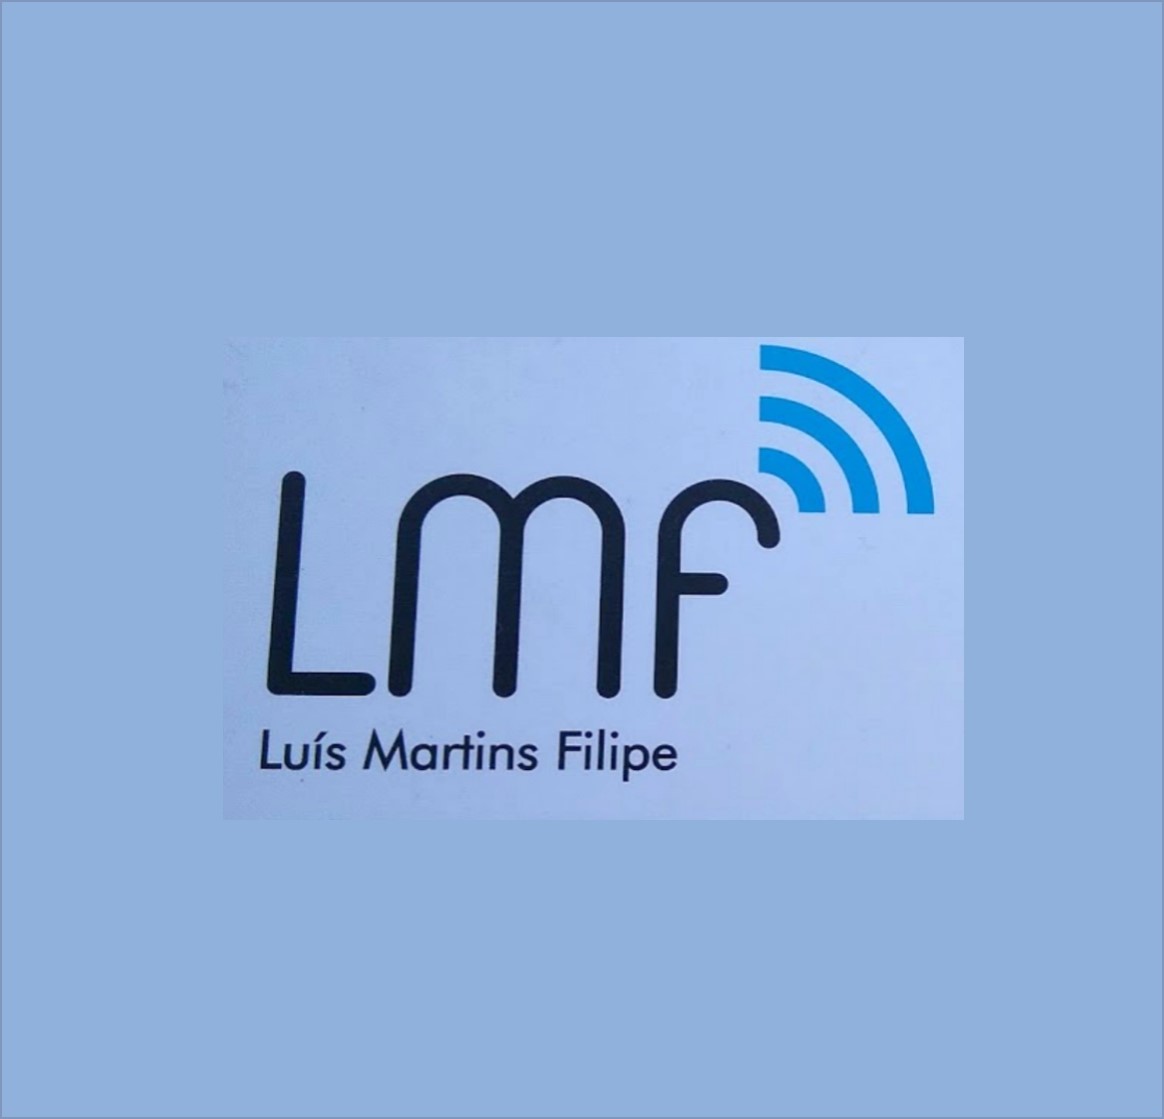 LMF - Luis Martins Filipe